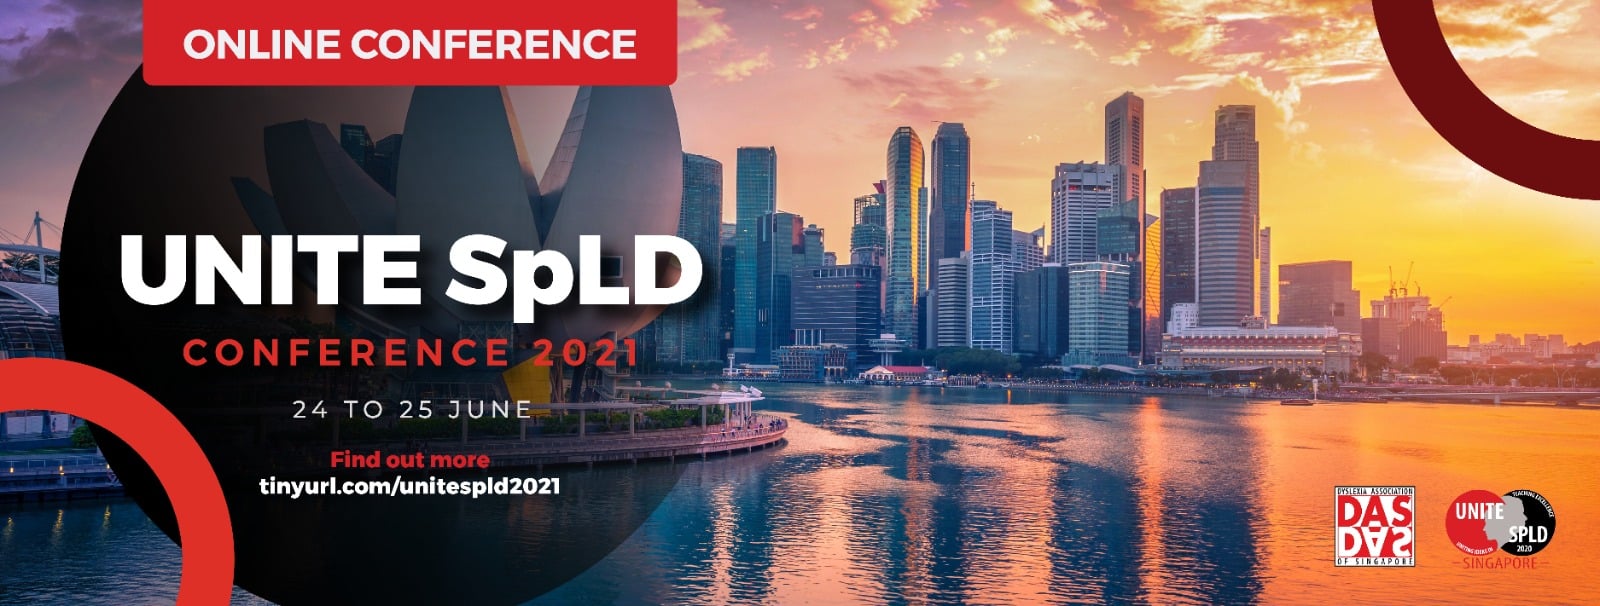 UNITE SPLD 2021, Singapore, Central, Singapore